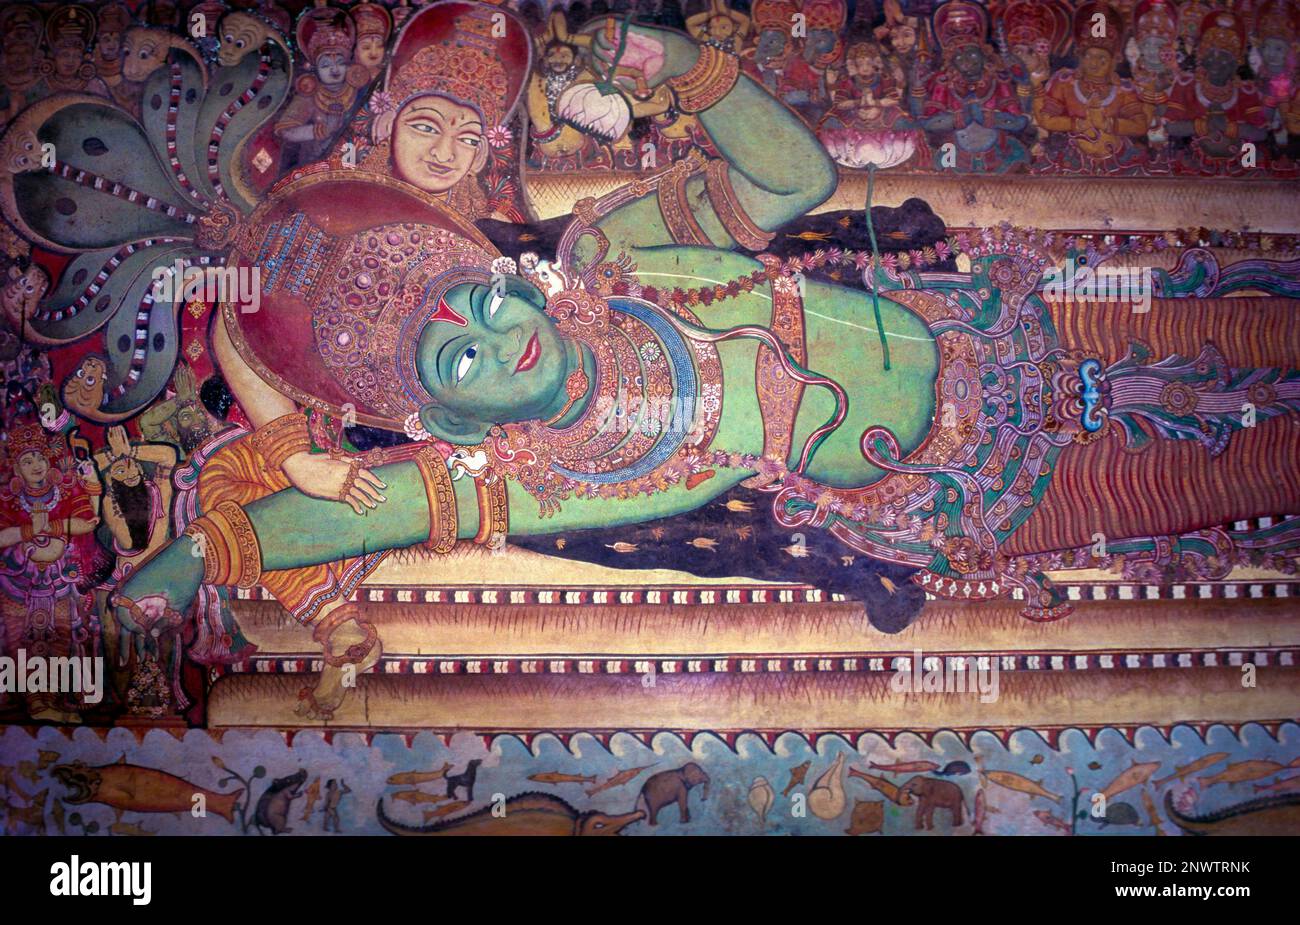 Pin on Jai shree veer Hanuman ji